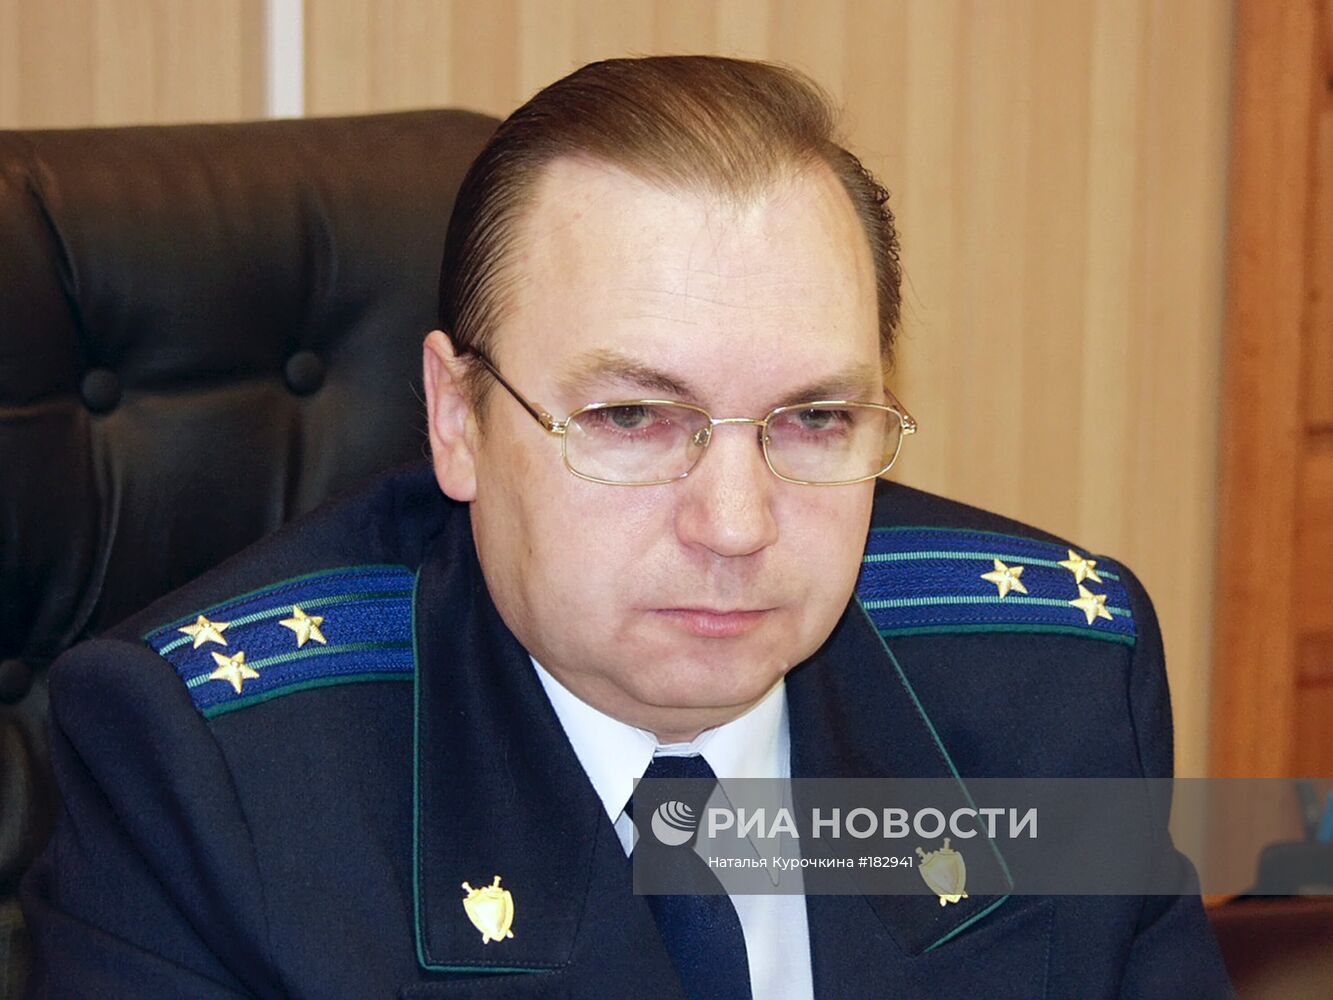 Убит прокурор Саратовской области